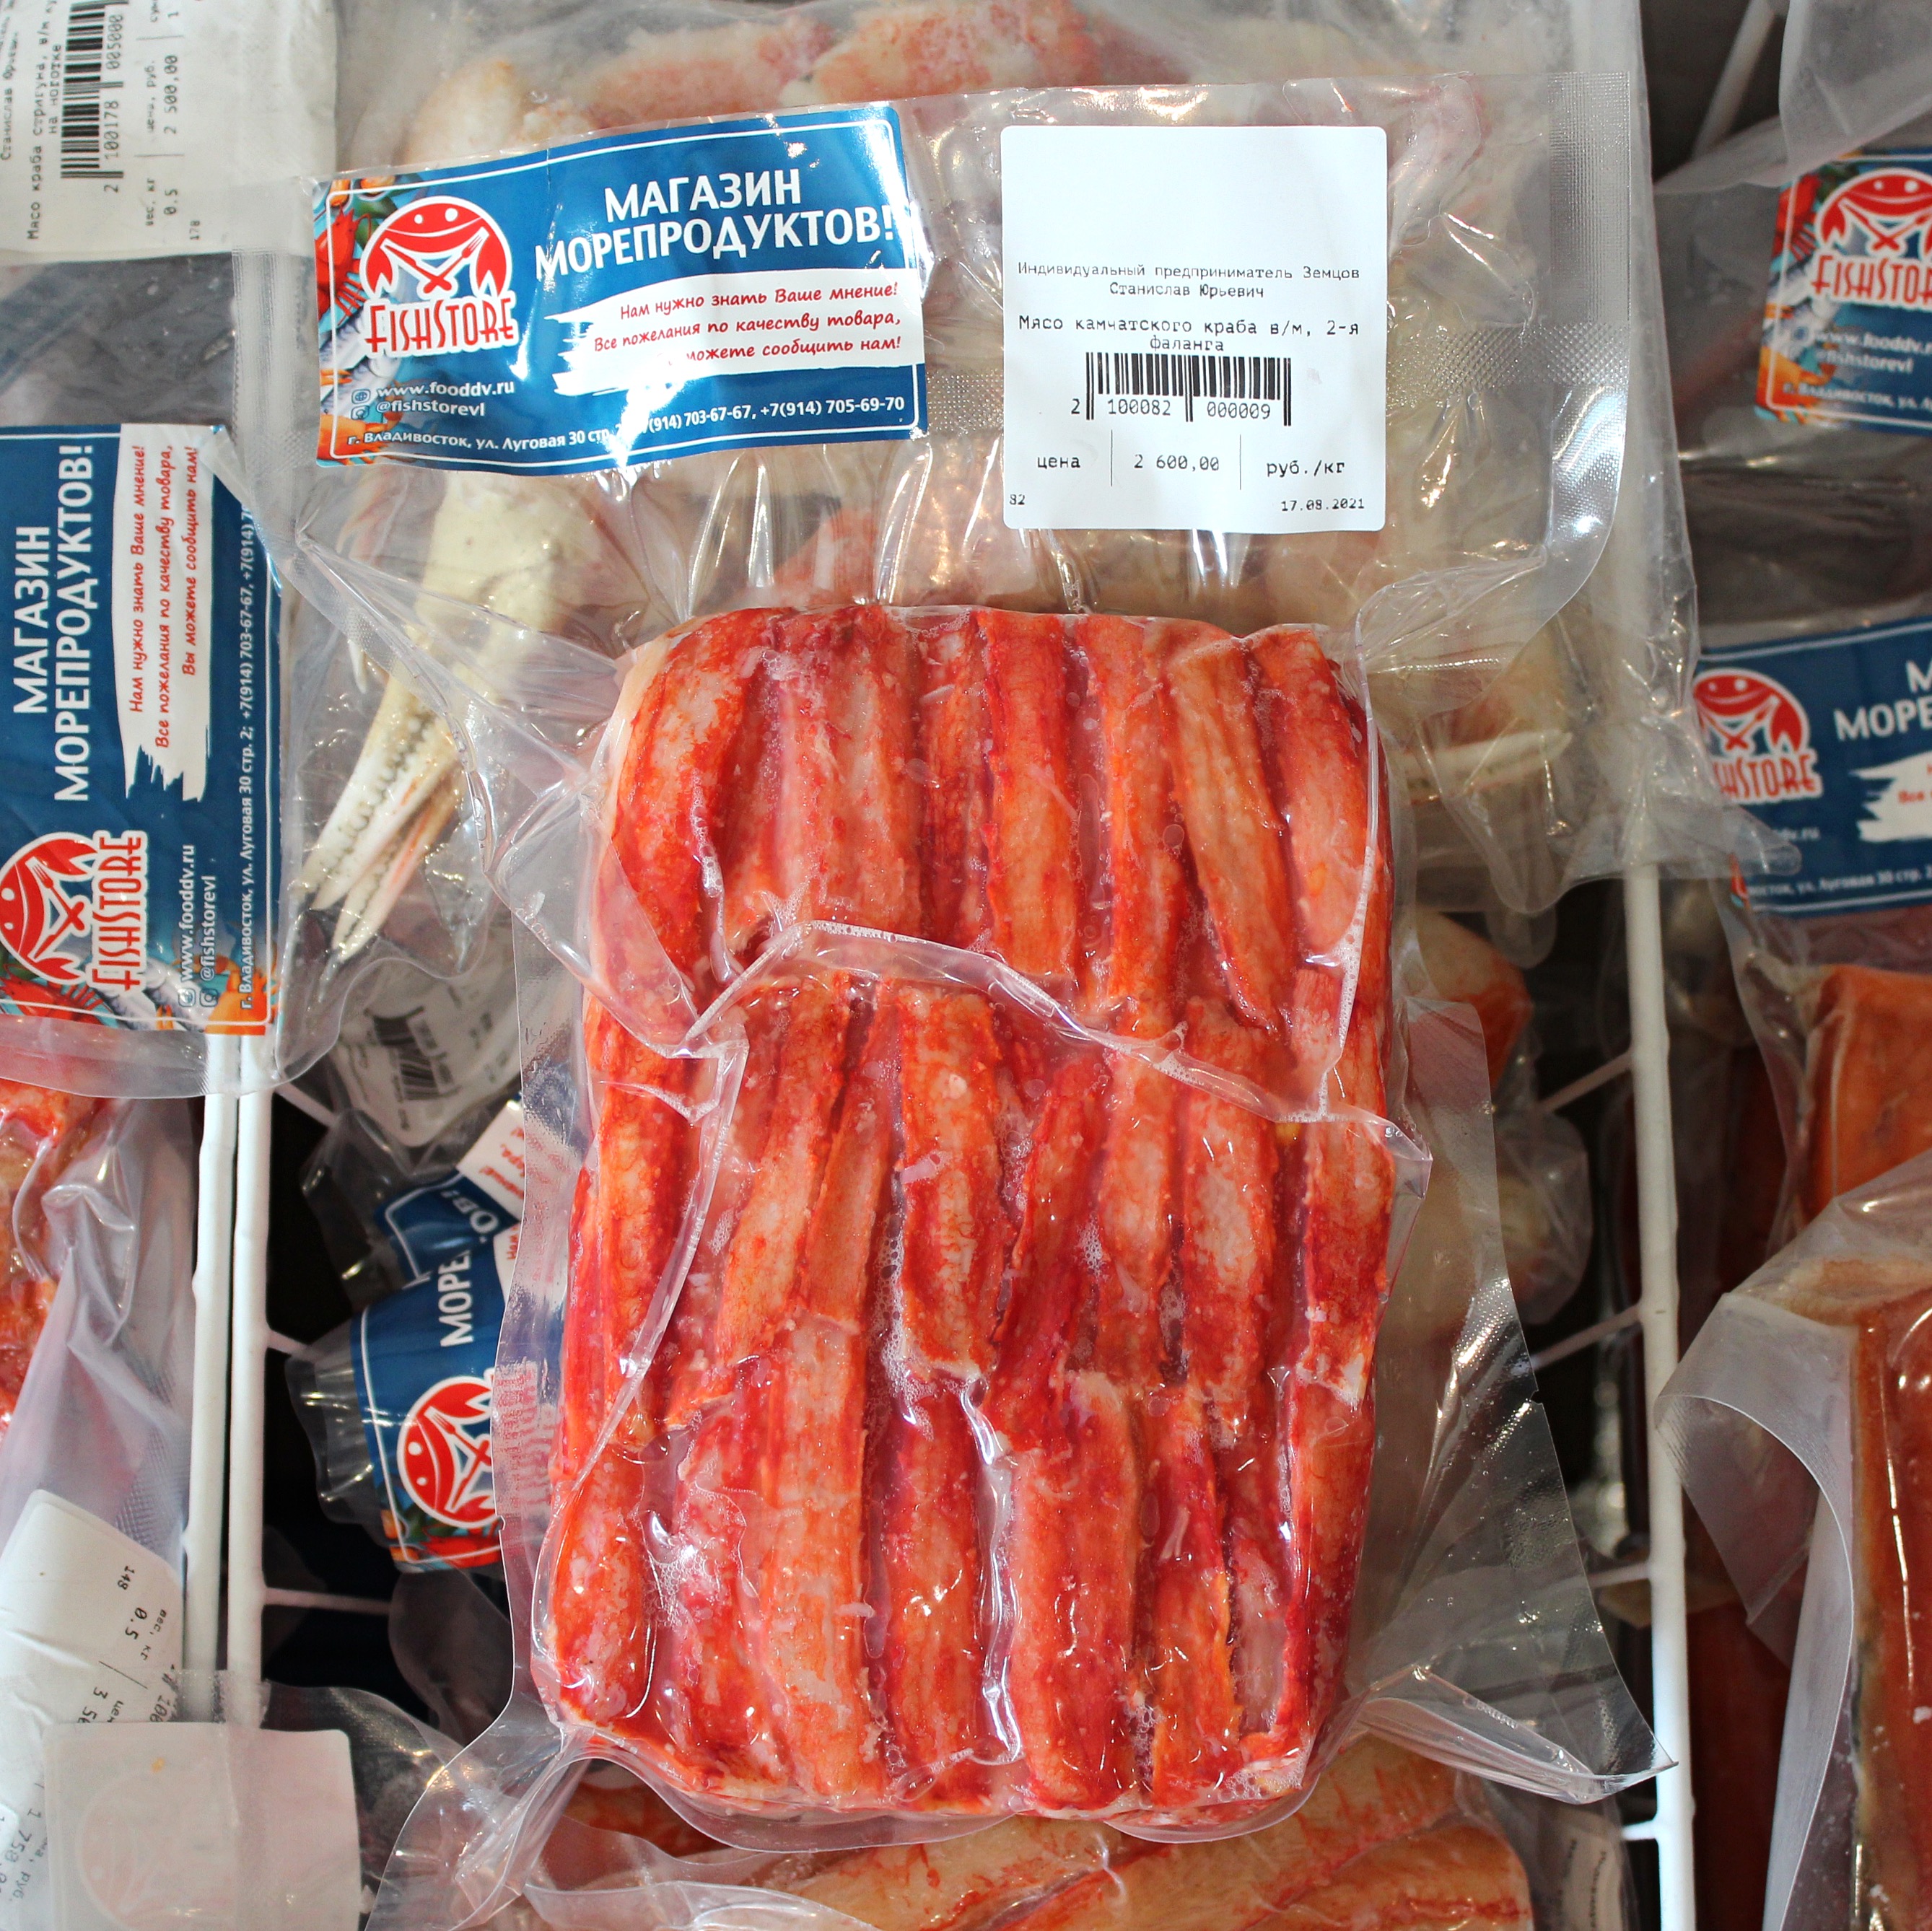 Купить Мясо Камчатского краба очищенное в/м, 2-я фаланга, 500 гр во Владивостоке